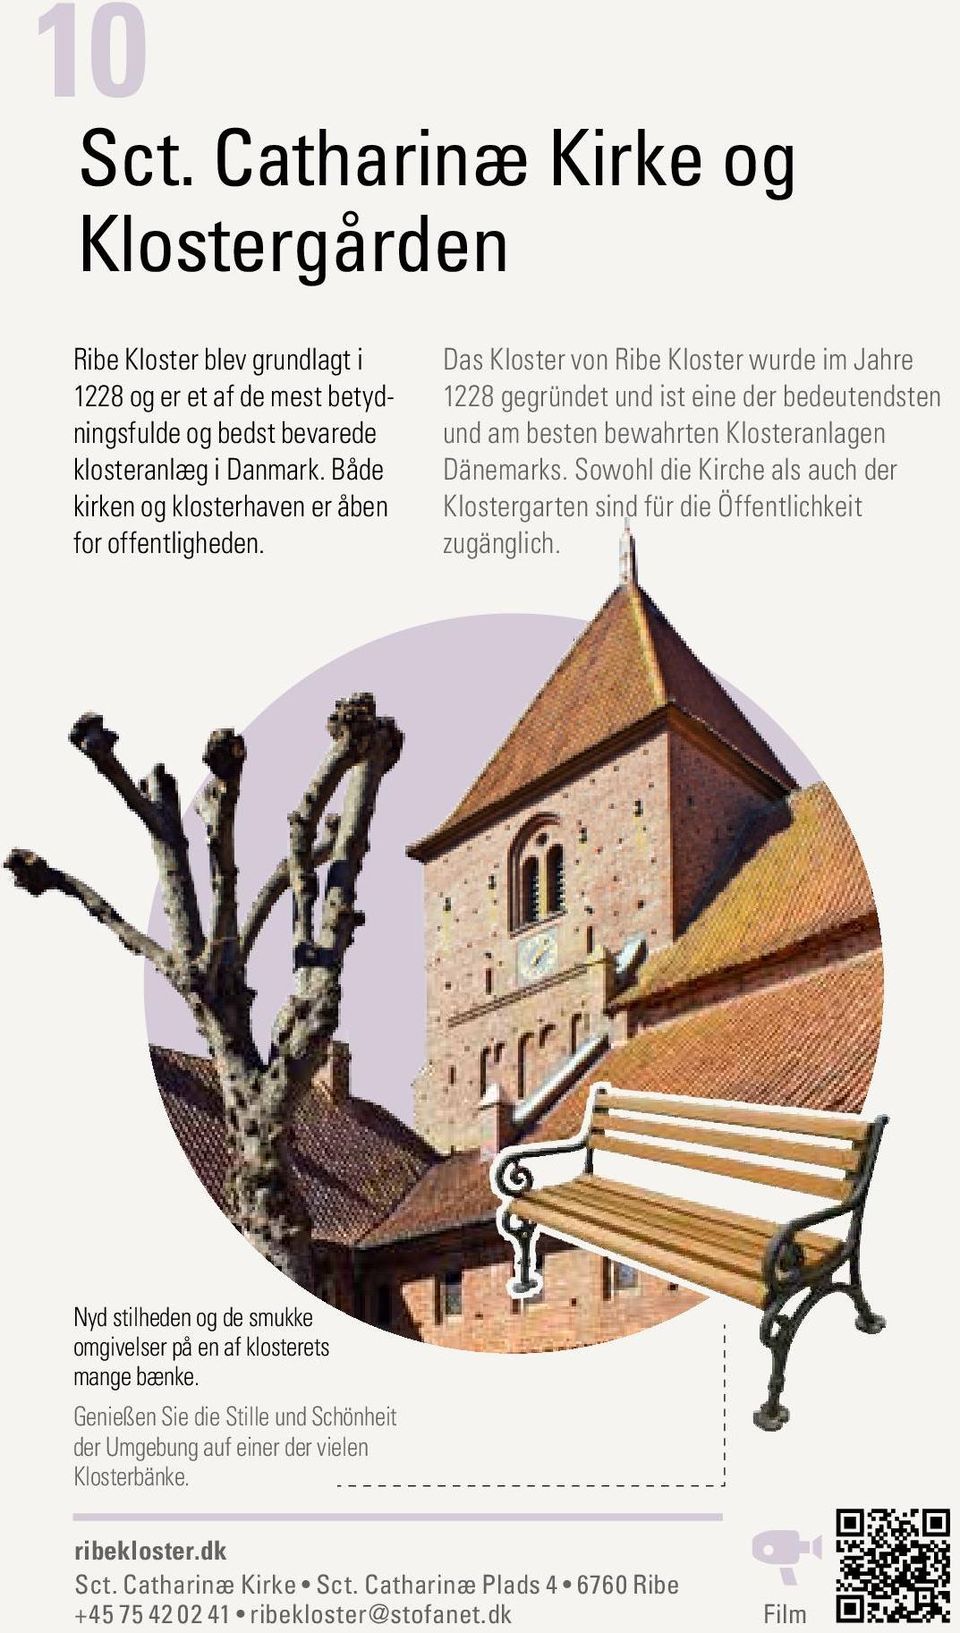 Das Kloster von Ribe Kloster wurde im Jahre 1228 gegründet und ist eine der bedeutendsten und am besten bewahrten Klosteranlagen Dänemarks.